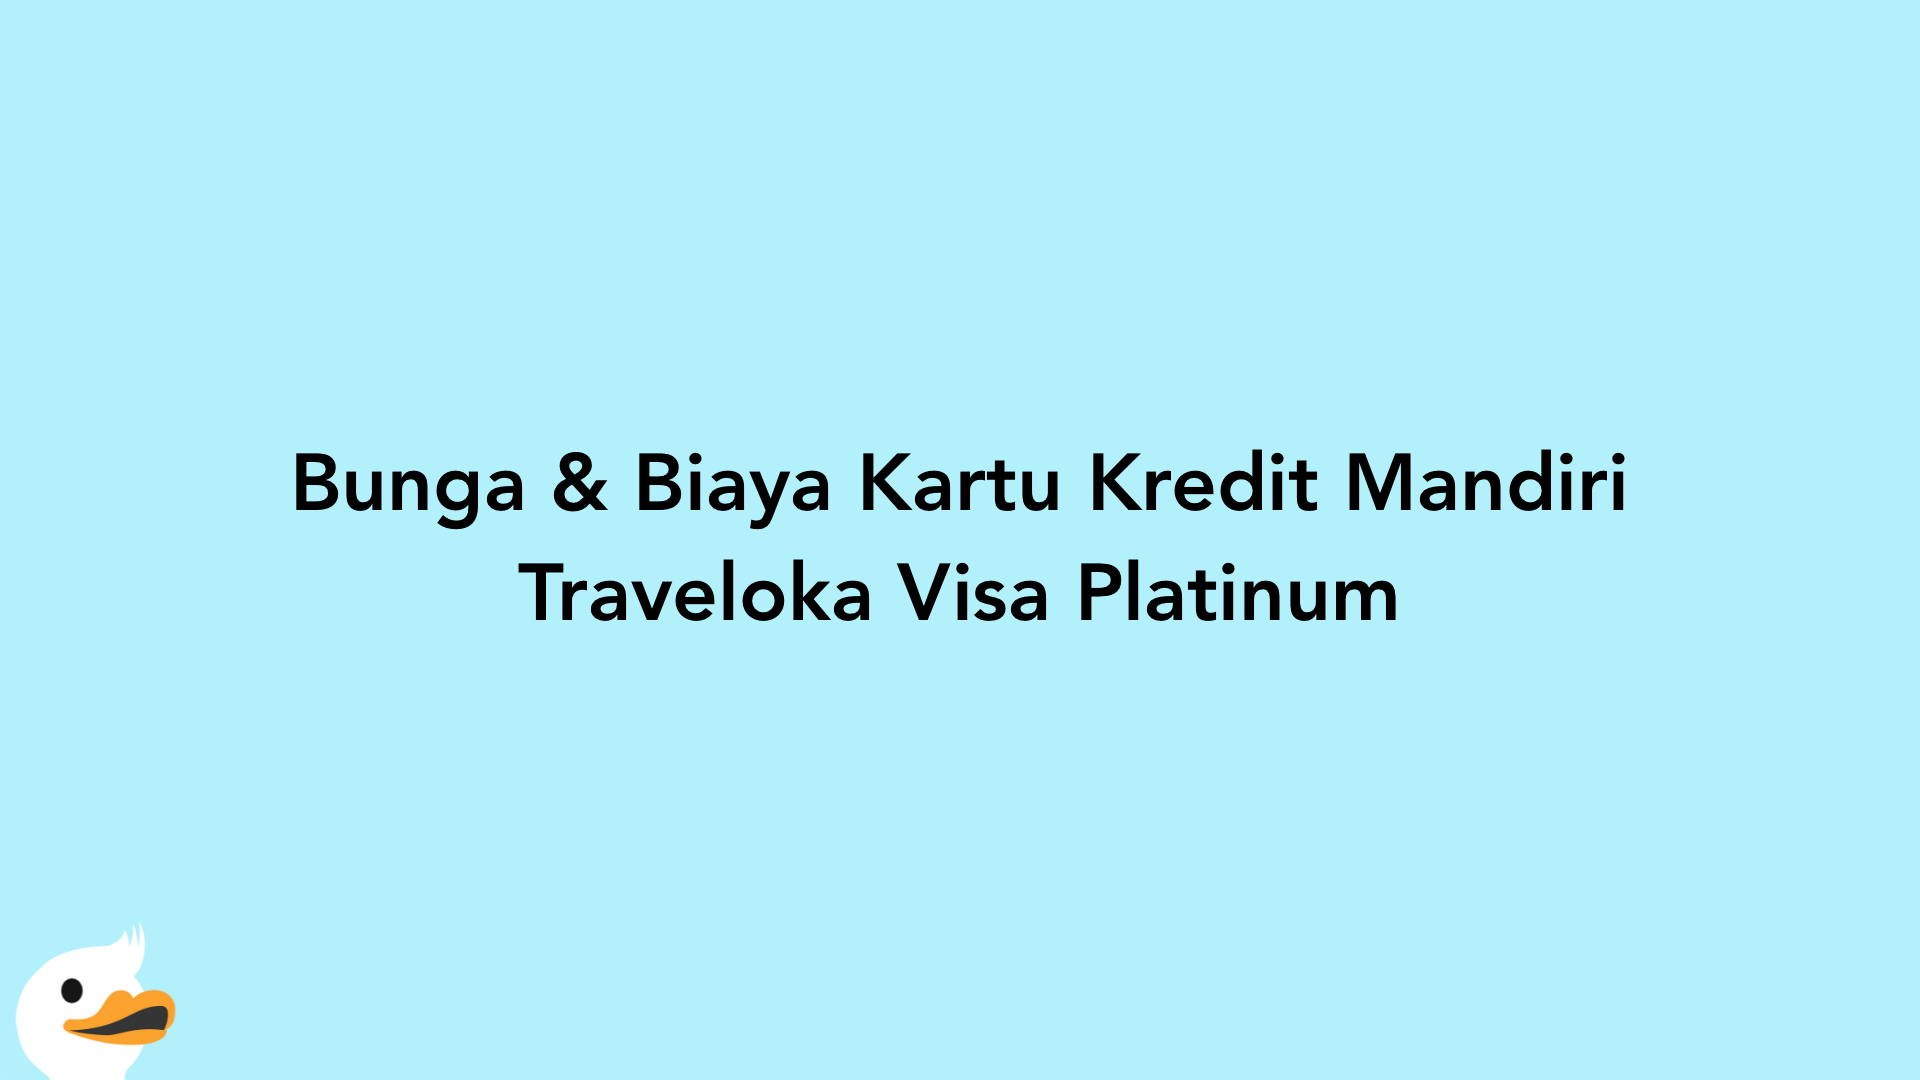 Bunga & Biaya Kartu Kredit Mandiri Traveloka Visa Platinum